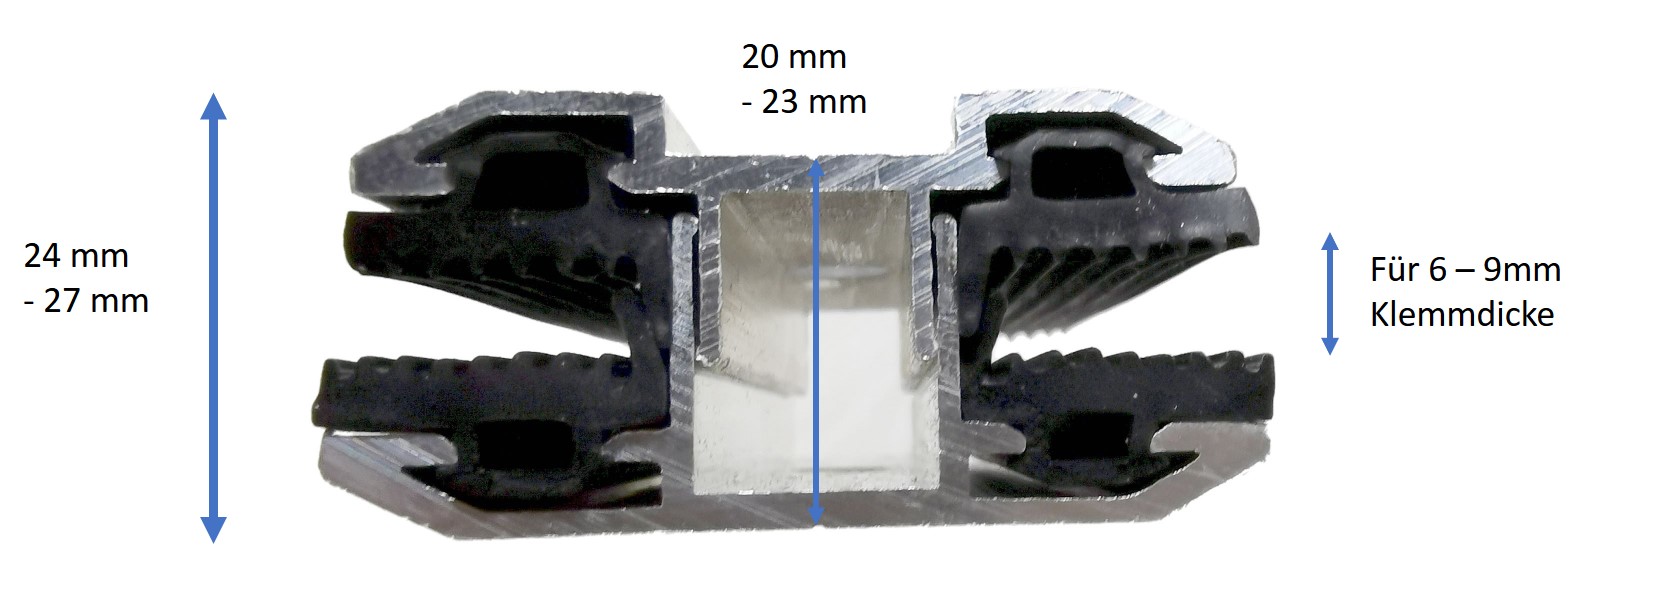 Mittelklemme für rahmenlose Module (Glas-Glas) 6 - 9 mm Klemmdicke